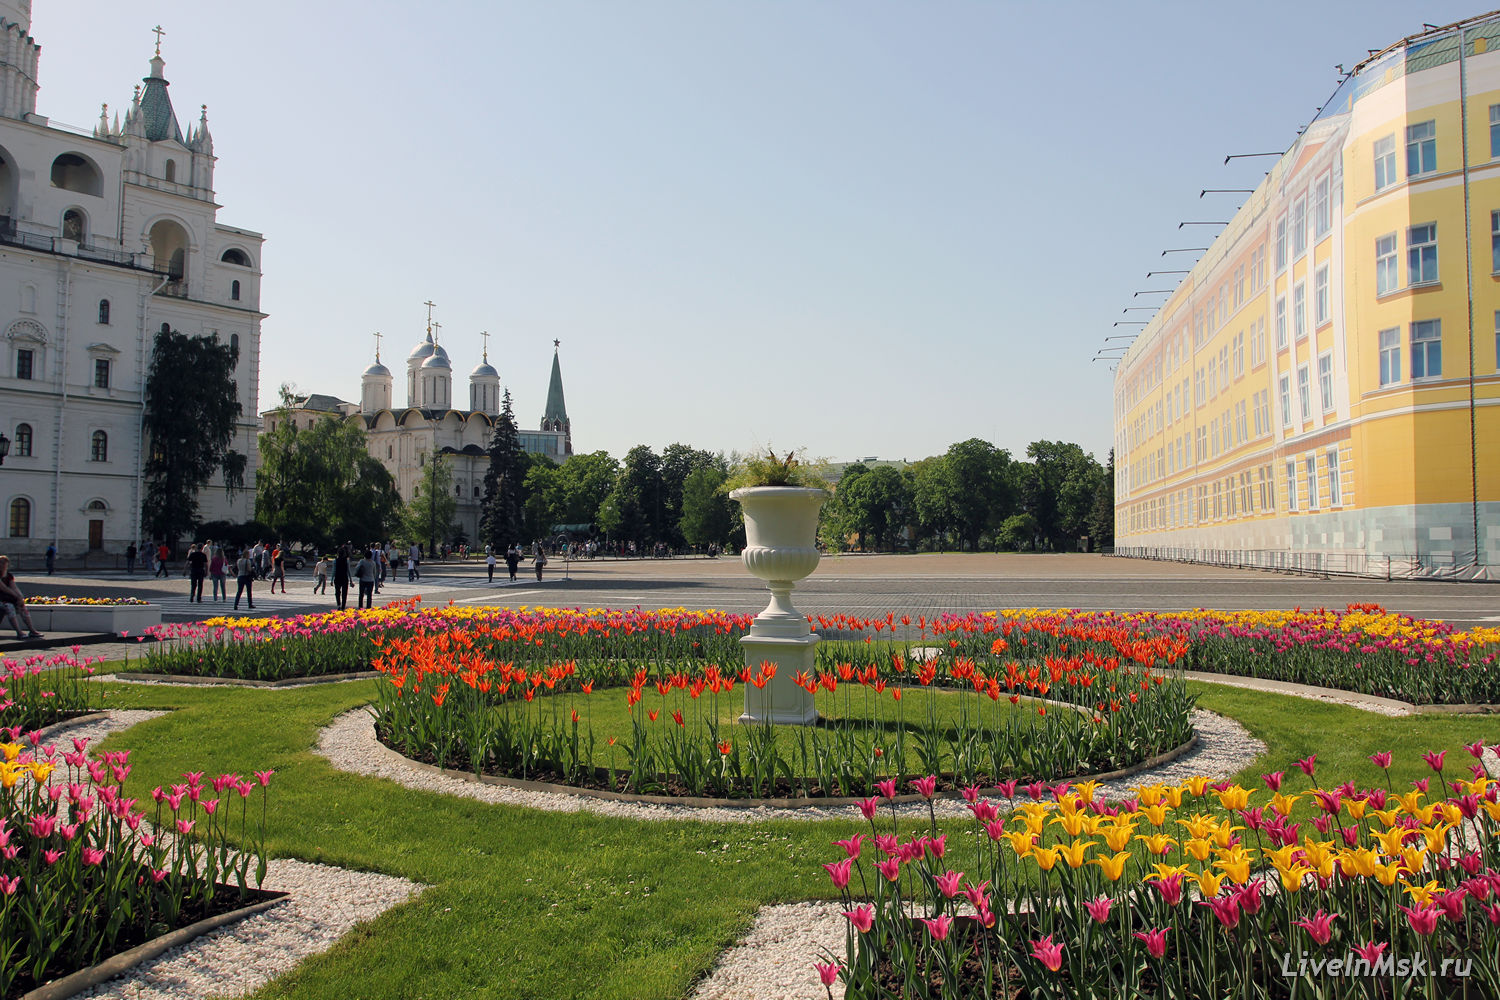 Ивановская площадь, фото 2015 года